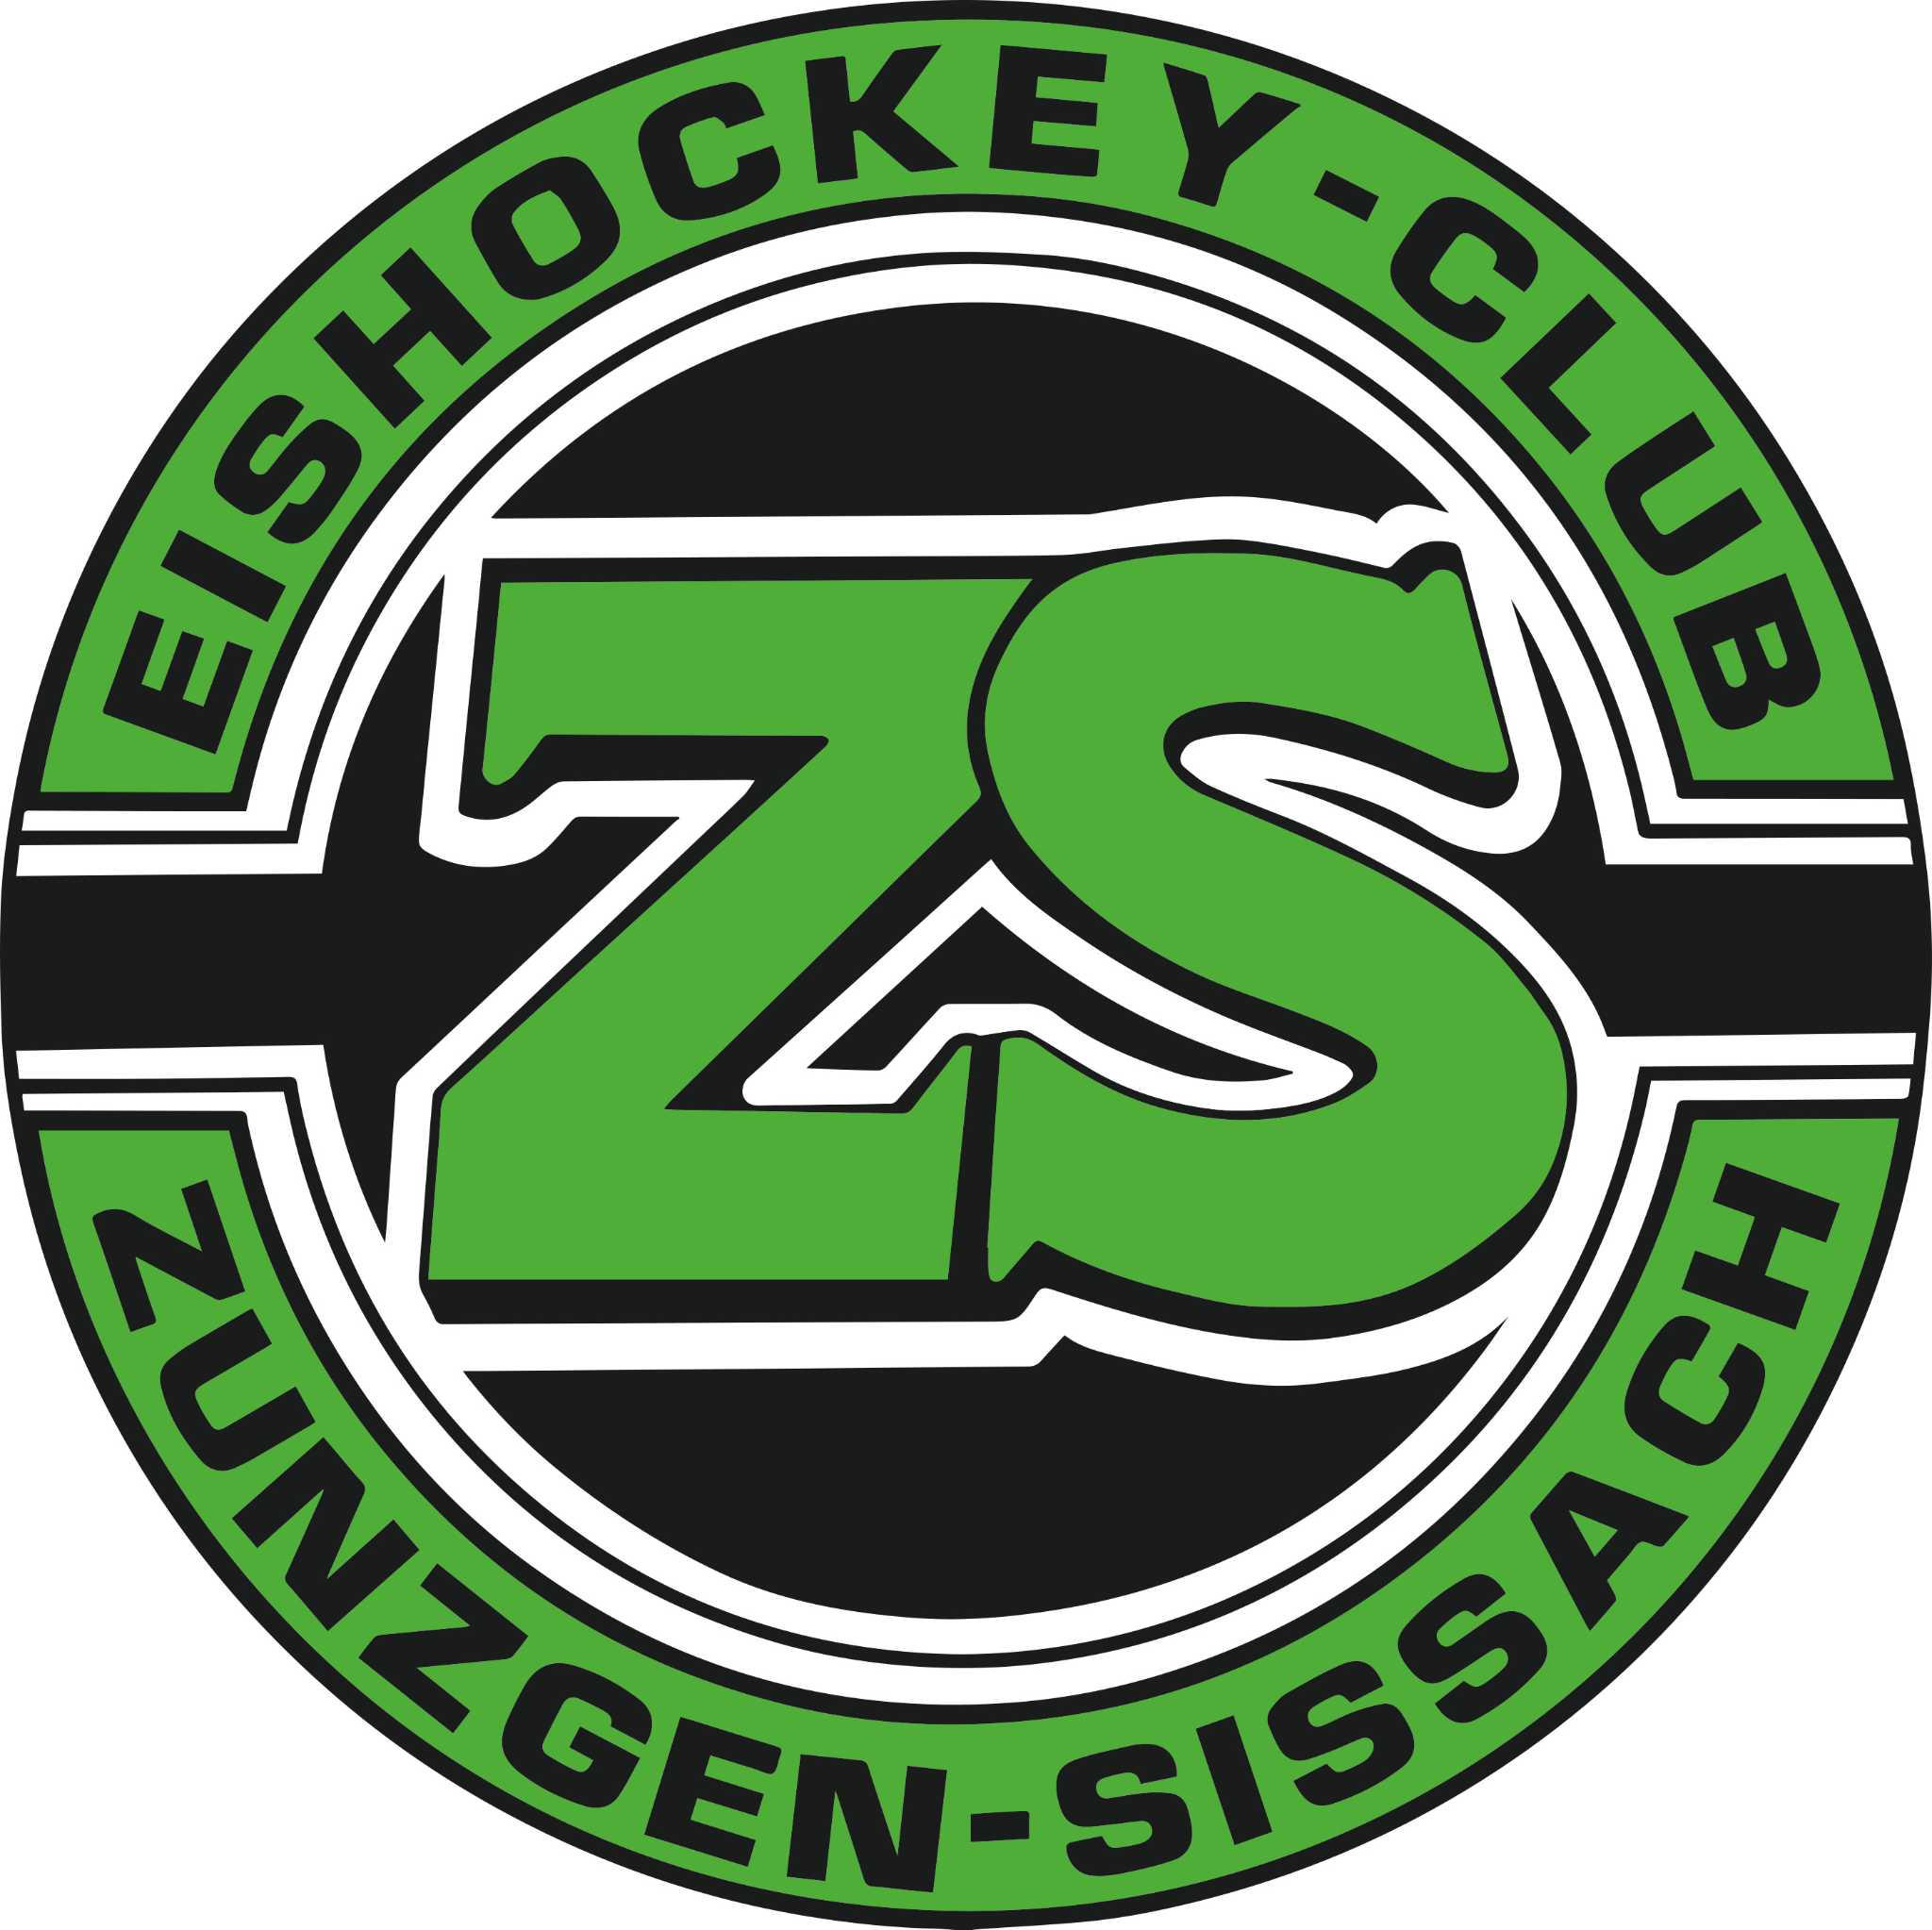 EHC Zunzgen-Sissach